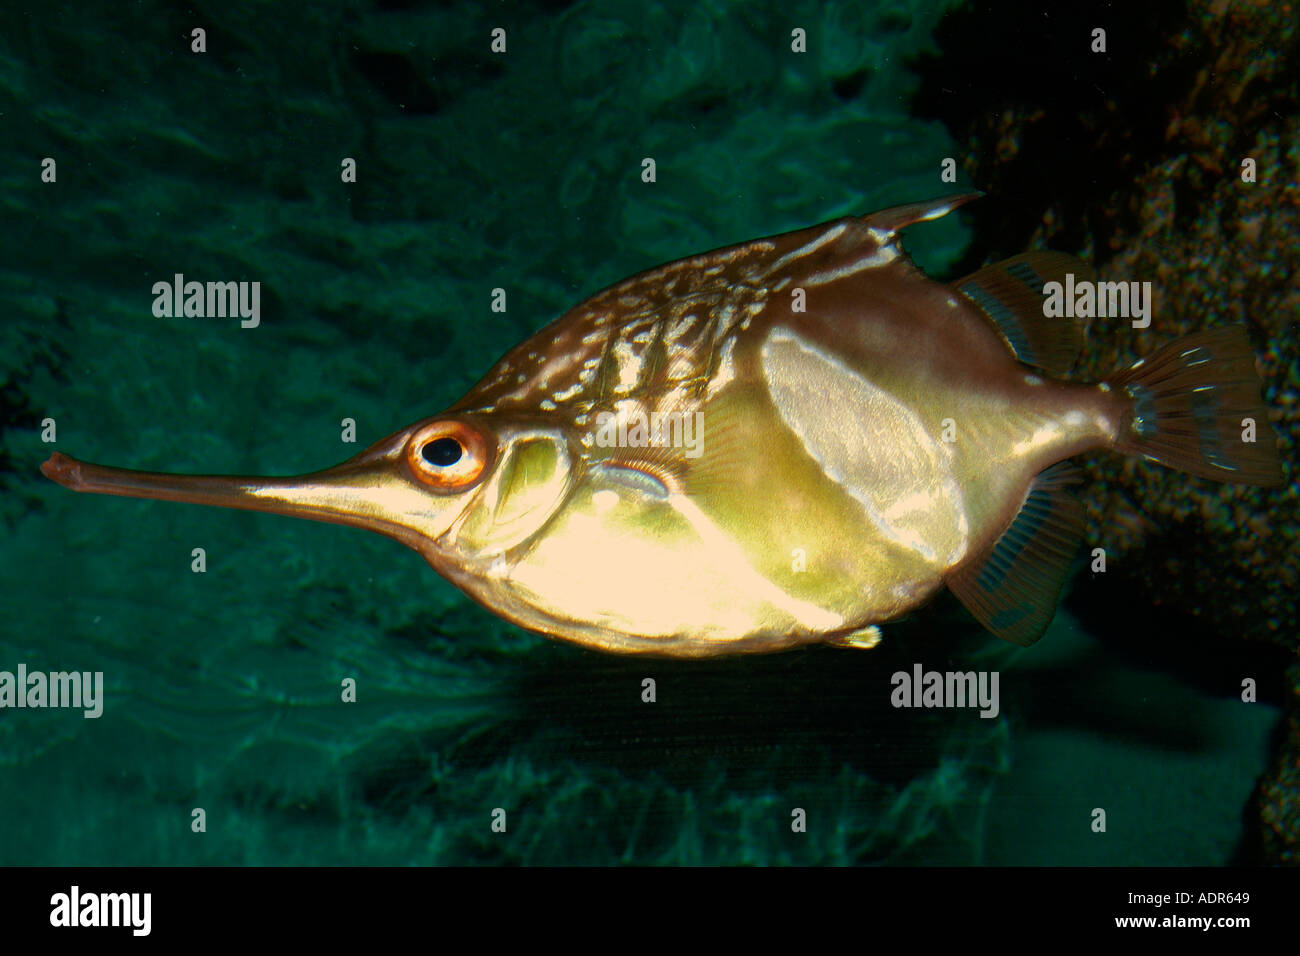 Longsnout bellowfish Notopogon macrosolen deep water fish found in southeast Atlantic photo taken in captivity Stock Photo